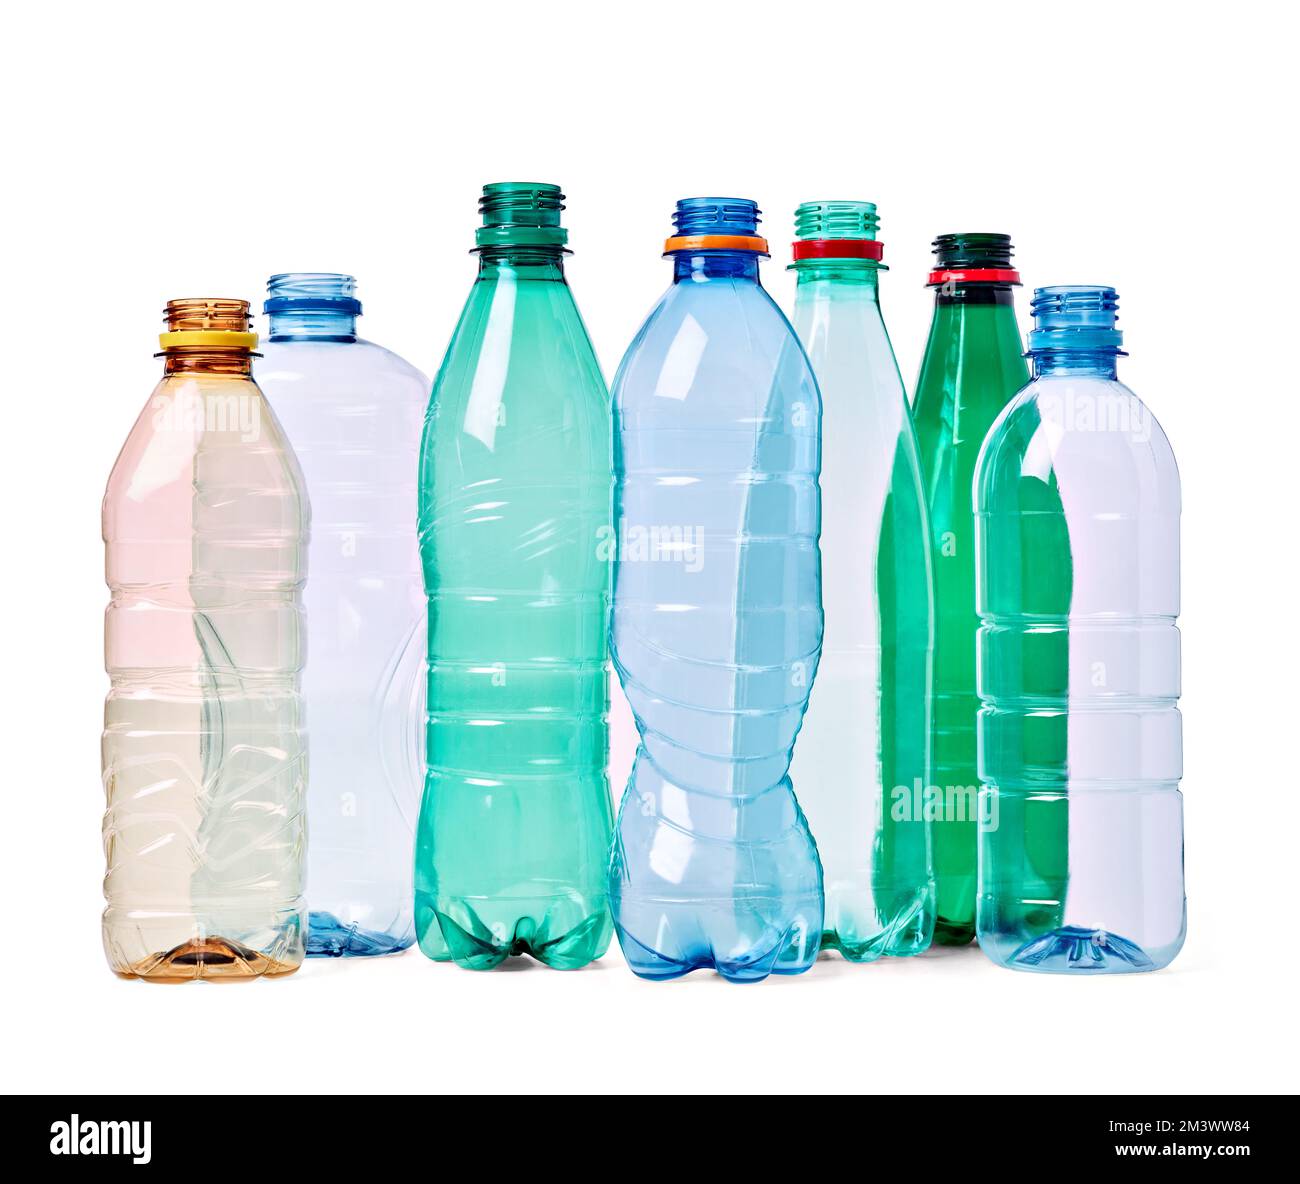 bouteille en plastique vide conteneur de recyclage transparent environnement de l'eau boisson poubelle Banque D'Images